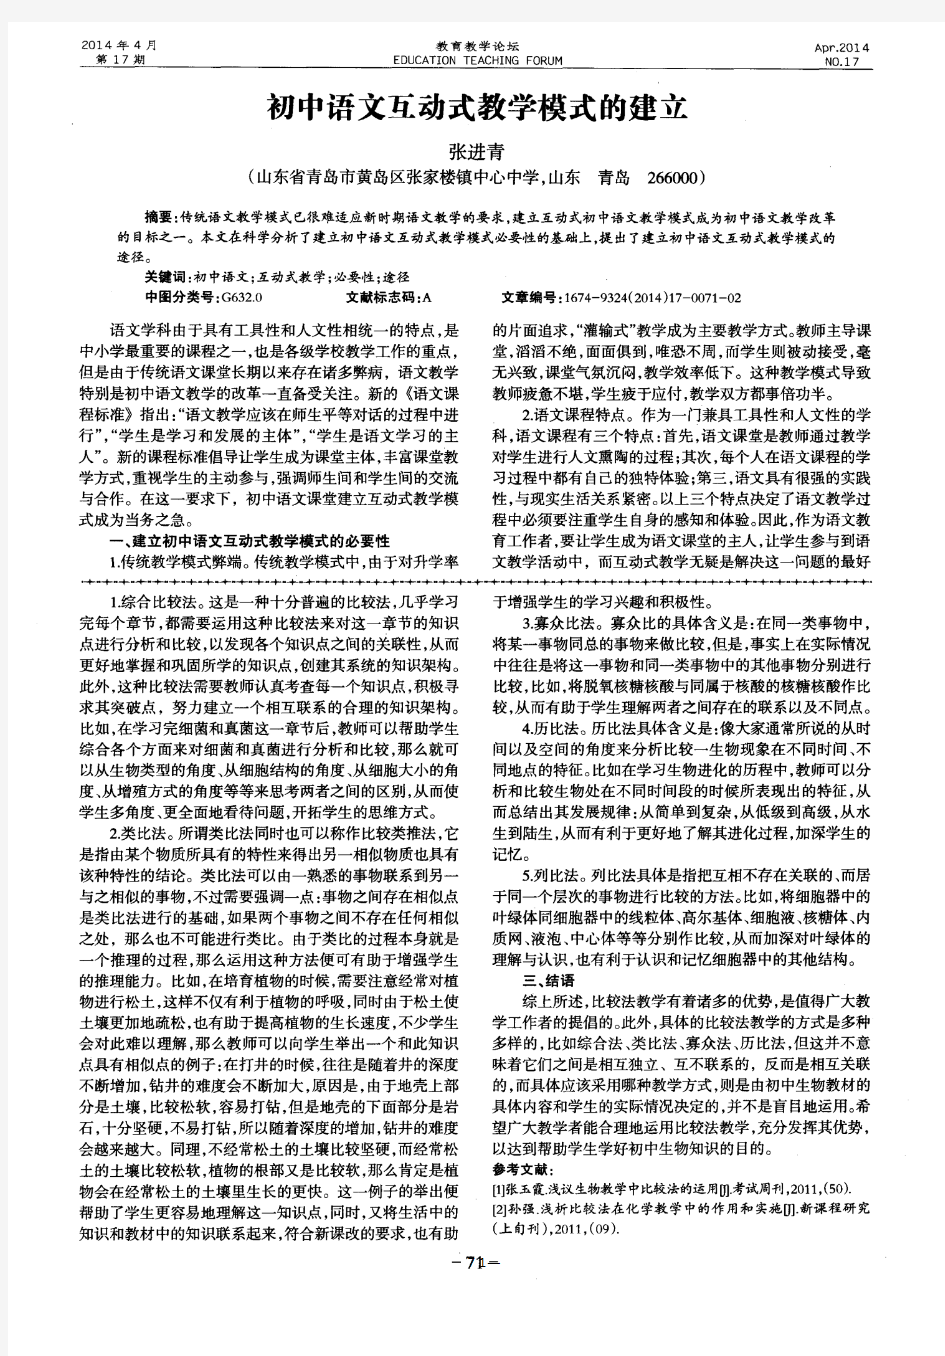 初中语文互动式教学模式的建立